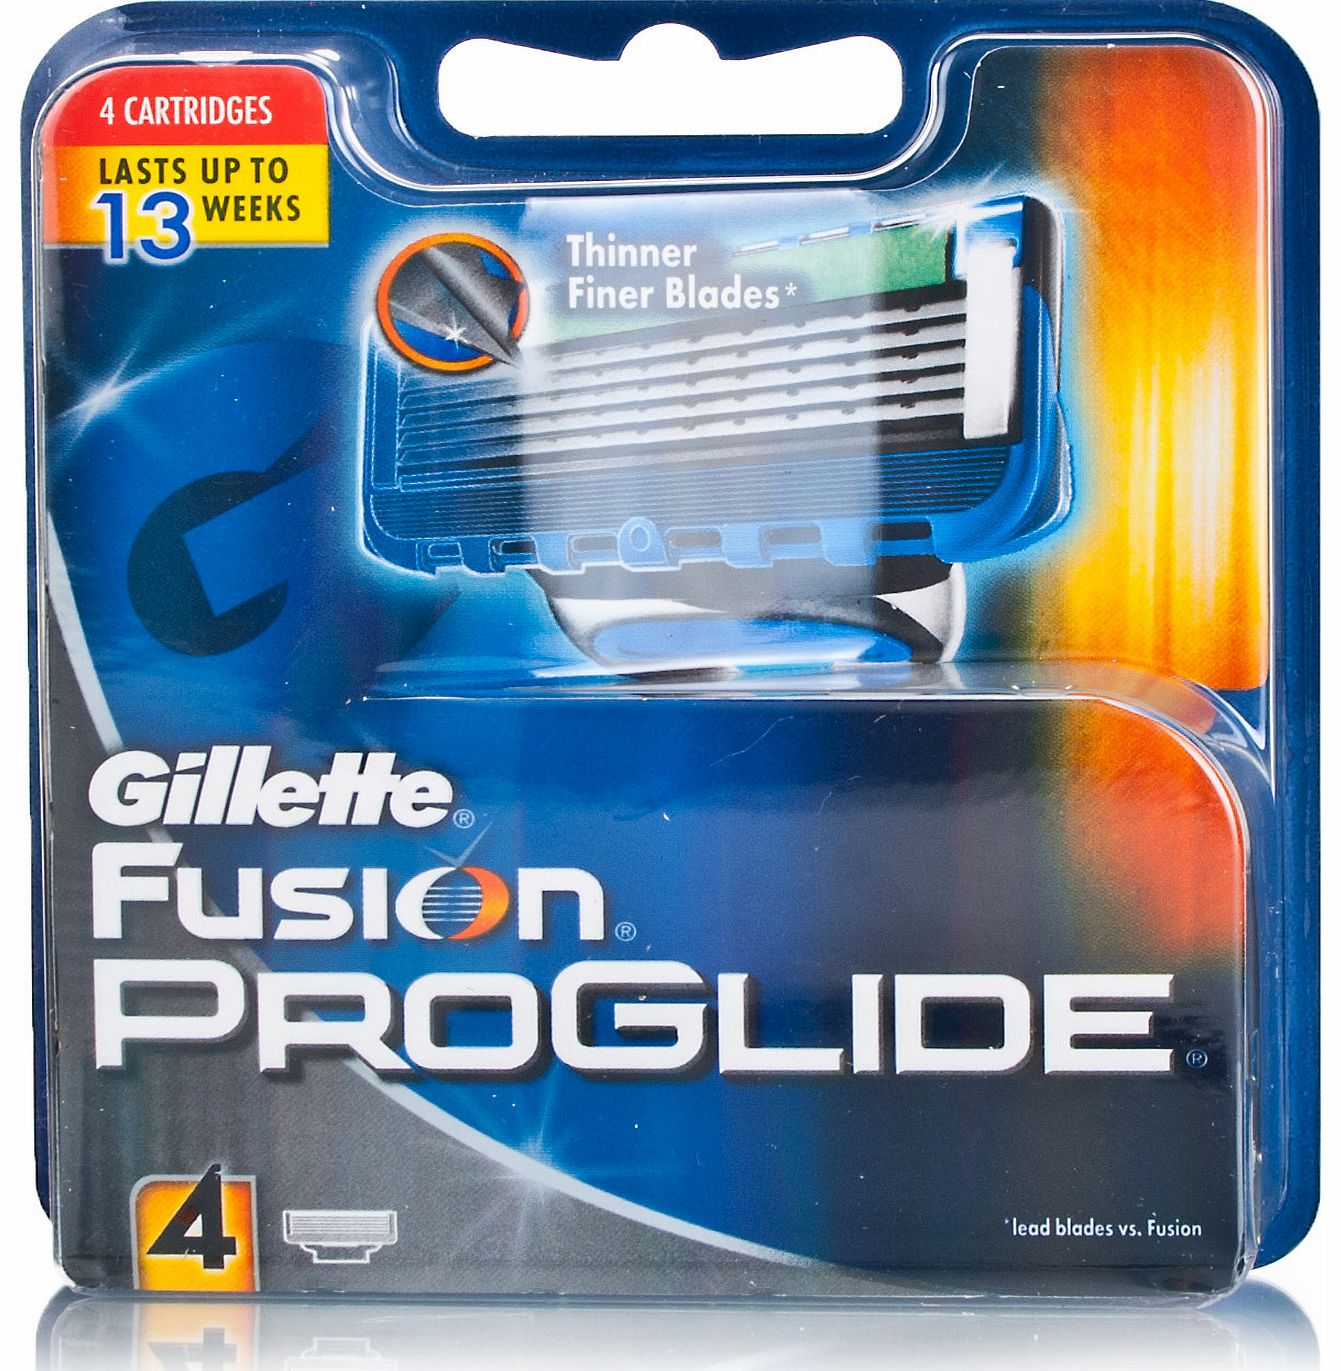 Gillette Fusion Proglide Razor Blades